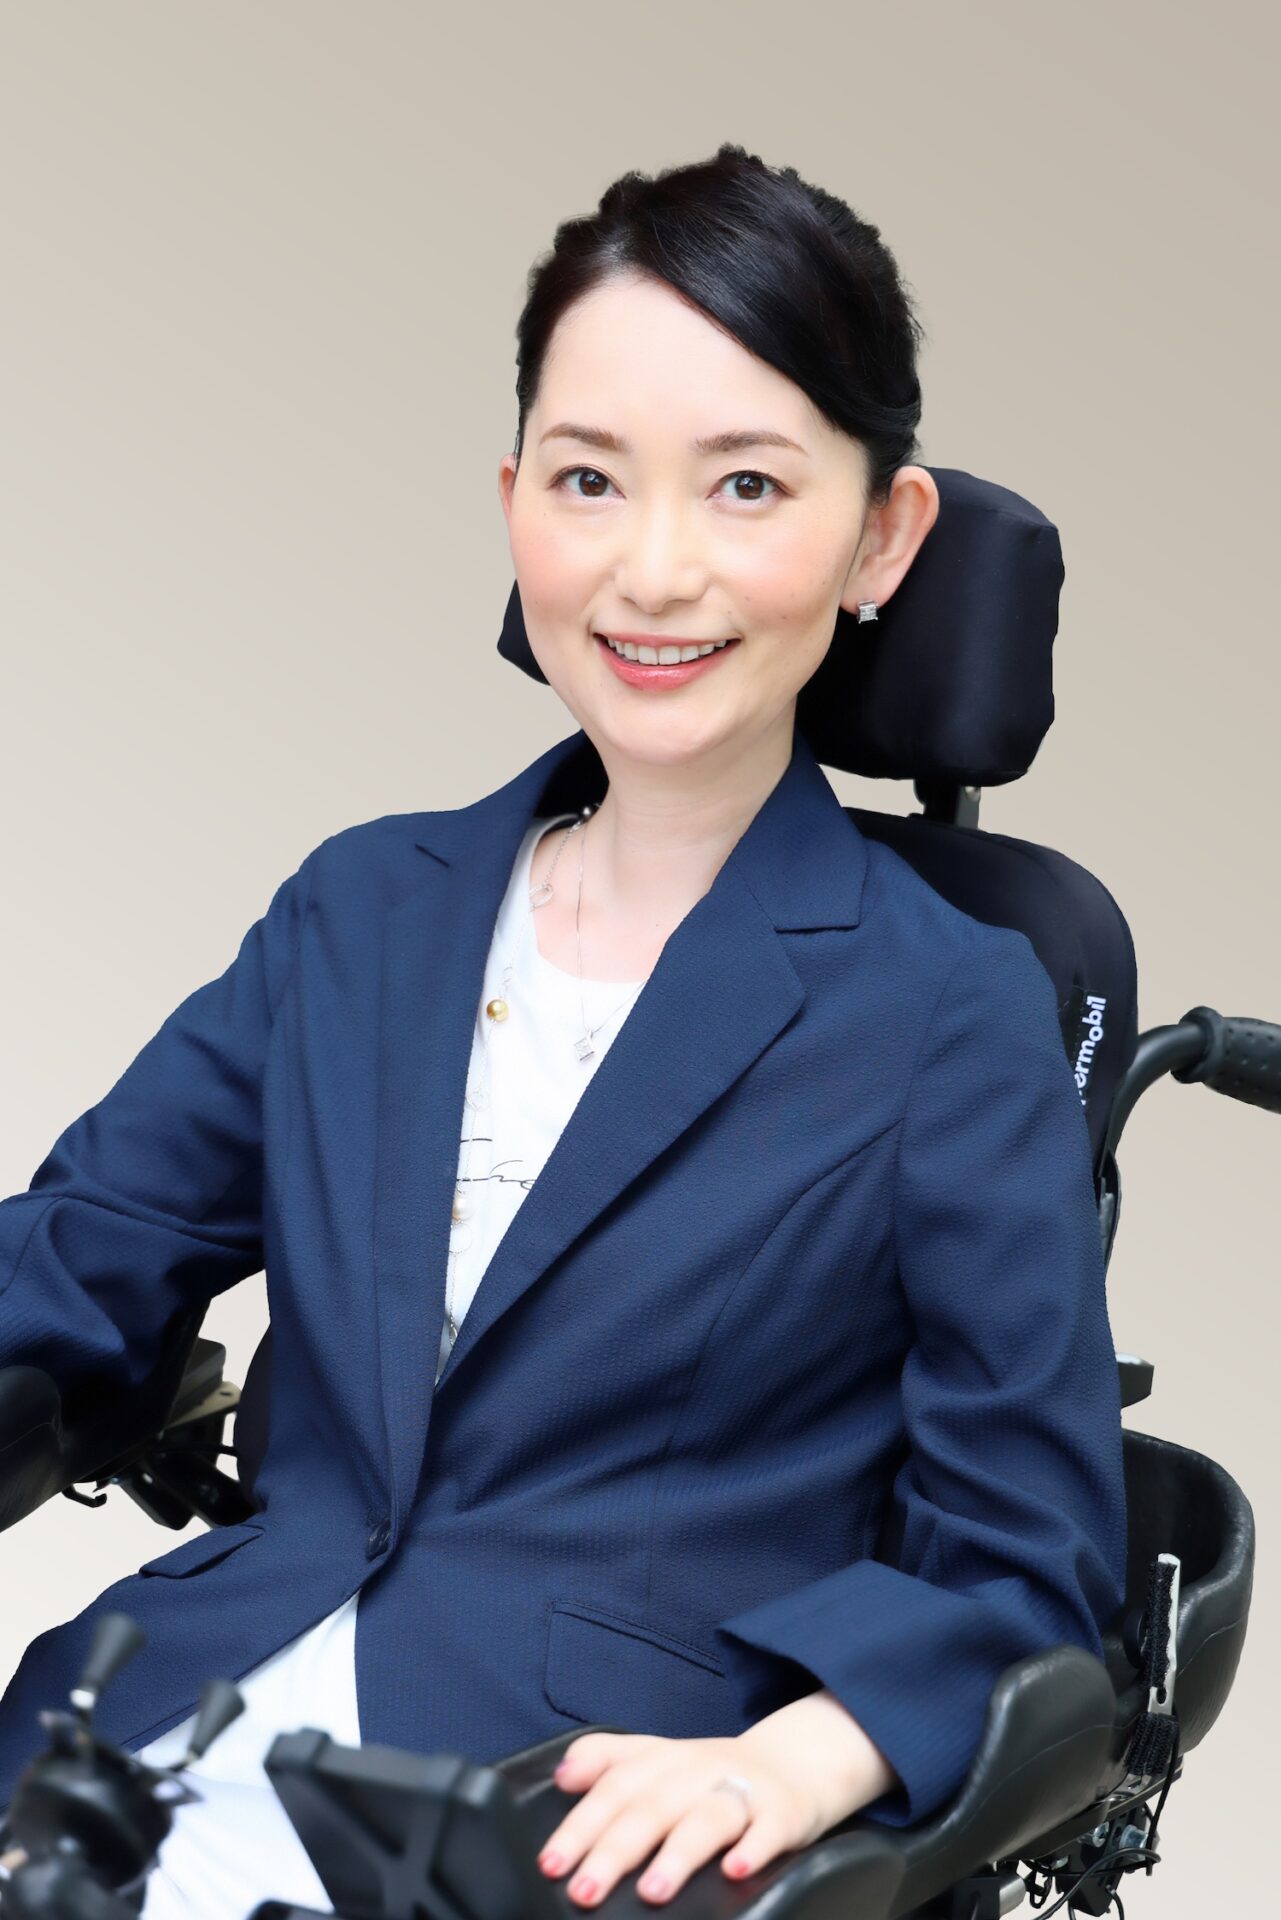 車椅子に乗った小野さんが、笑顔でこちらを見つめています。黒髪を後ろにまとめ、紺のジャケットを着ています